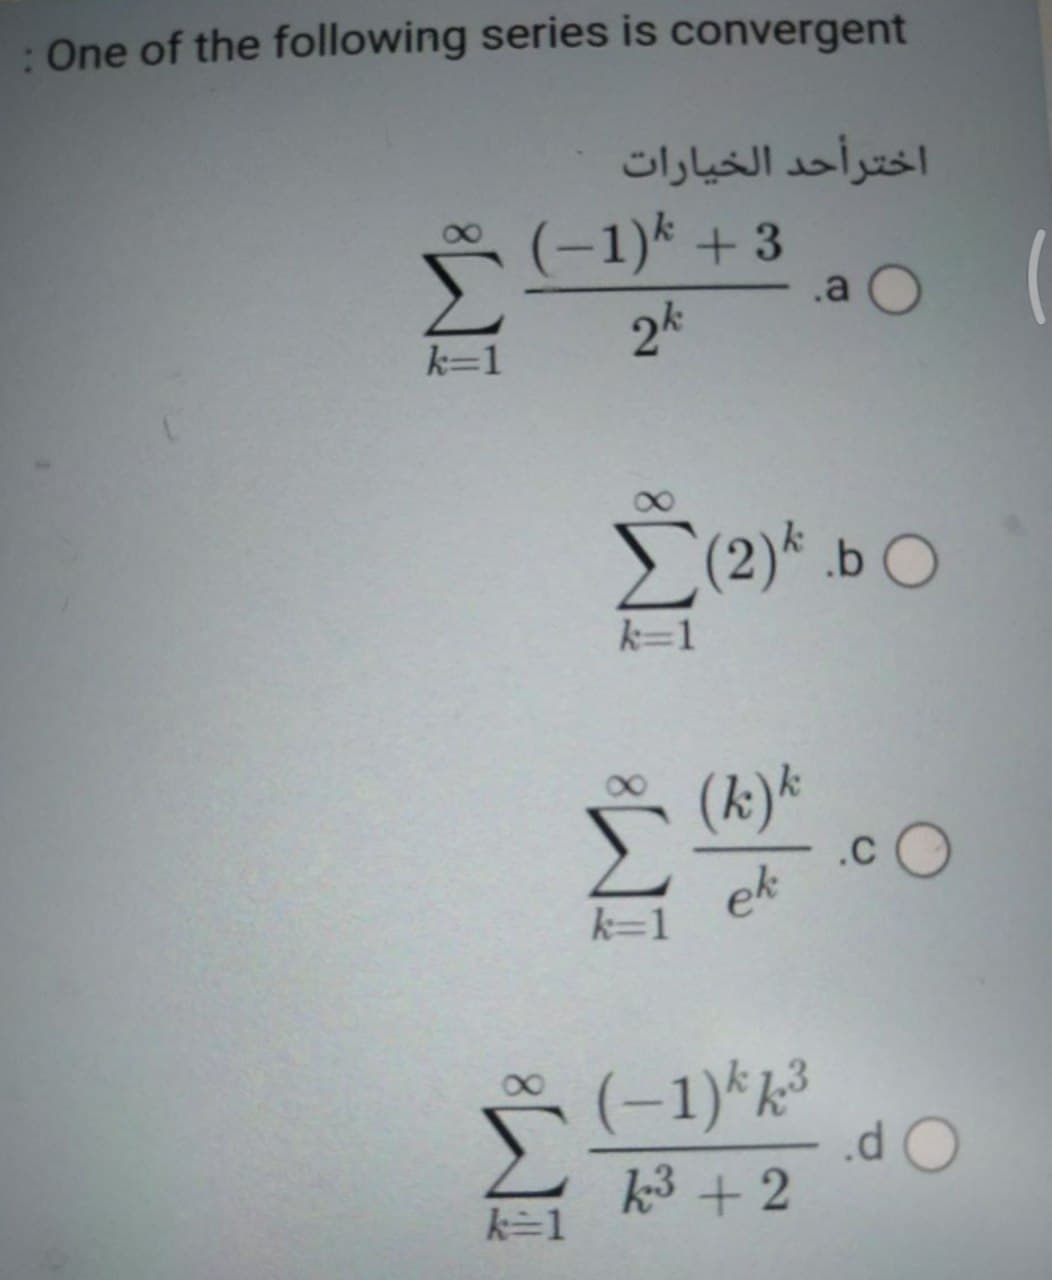 :One of the following series is convergent
اخترأحد الخیارات
(-1)k + 3
.a O
2k
k=1
E(2)* .b O
k=1
(k)*
.cO
ek
k=1
(-1)*k³
.d
k3 +2
k=1
